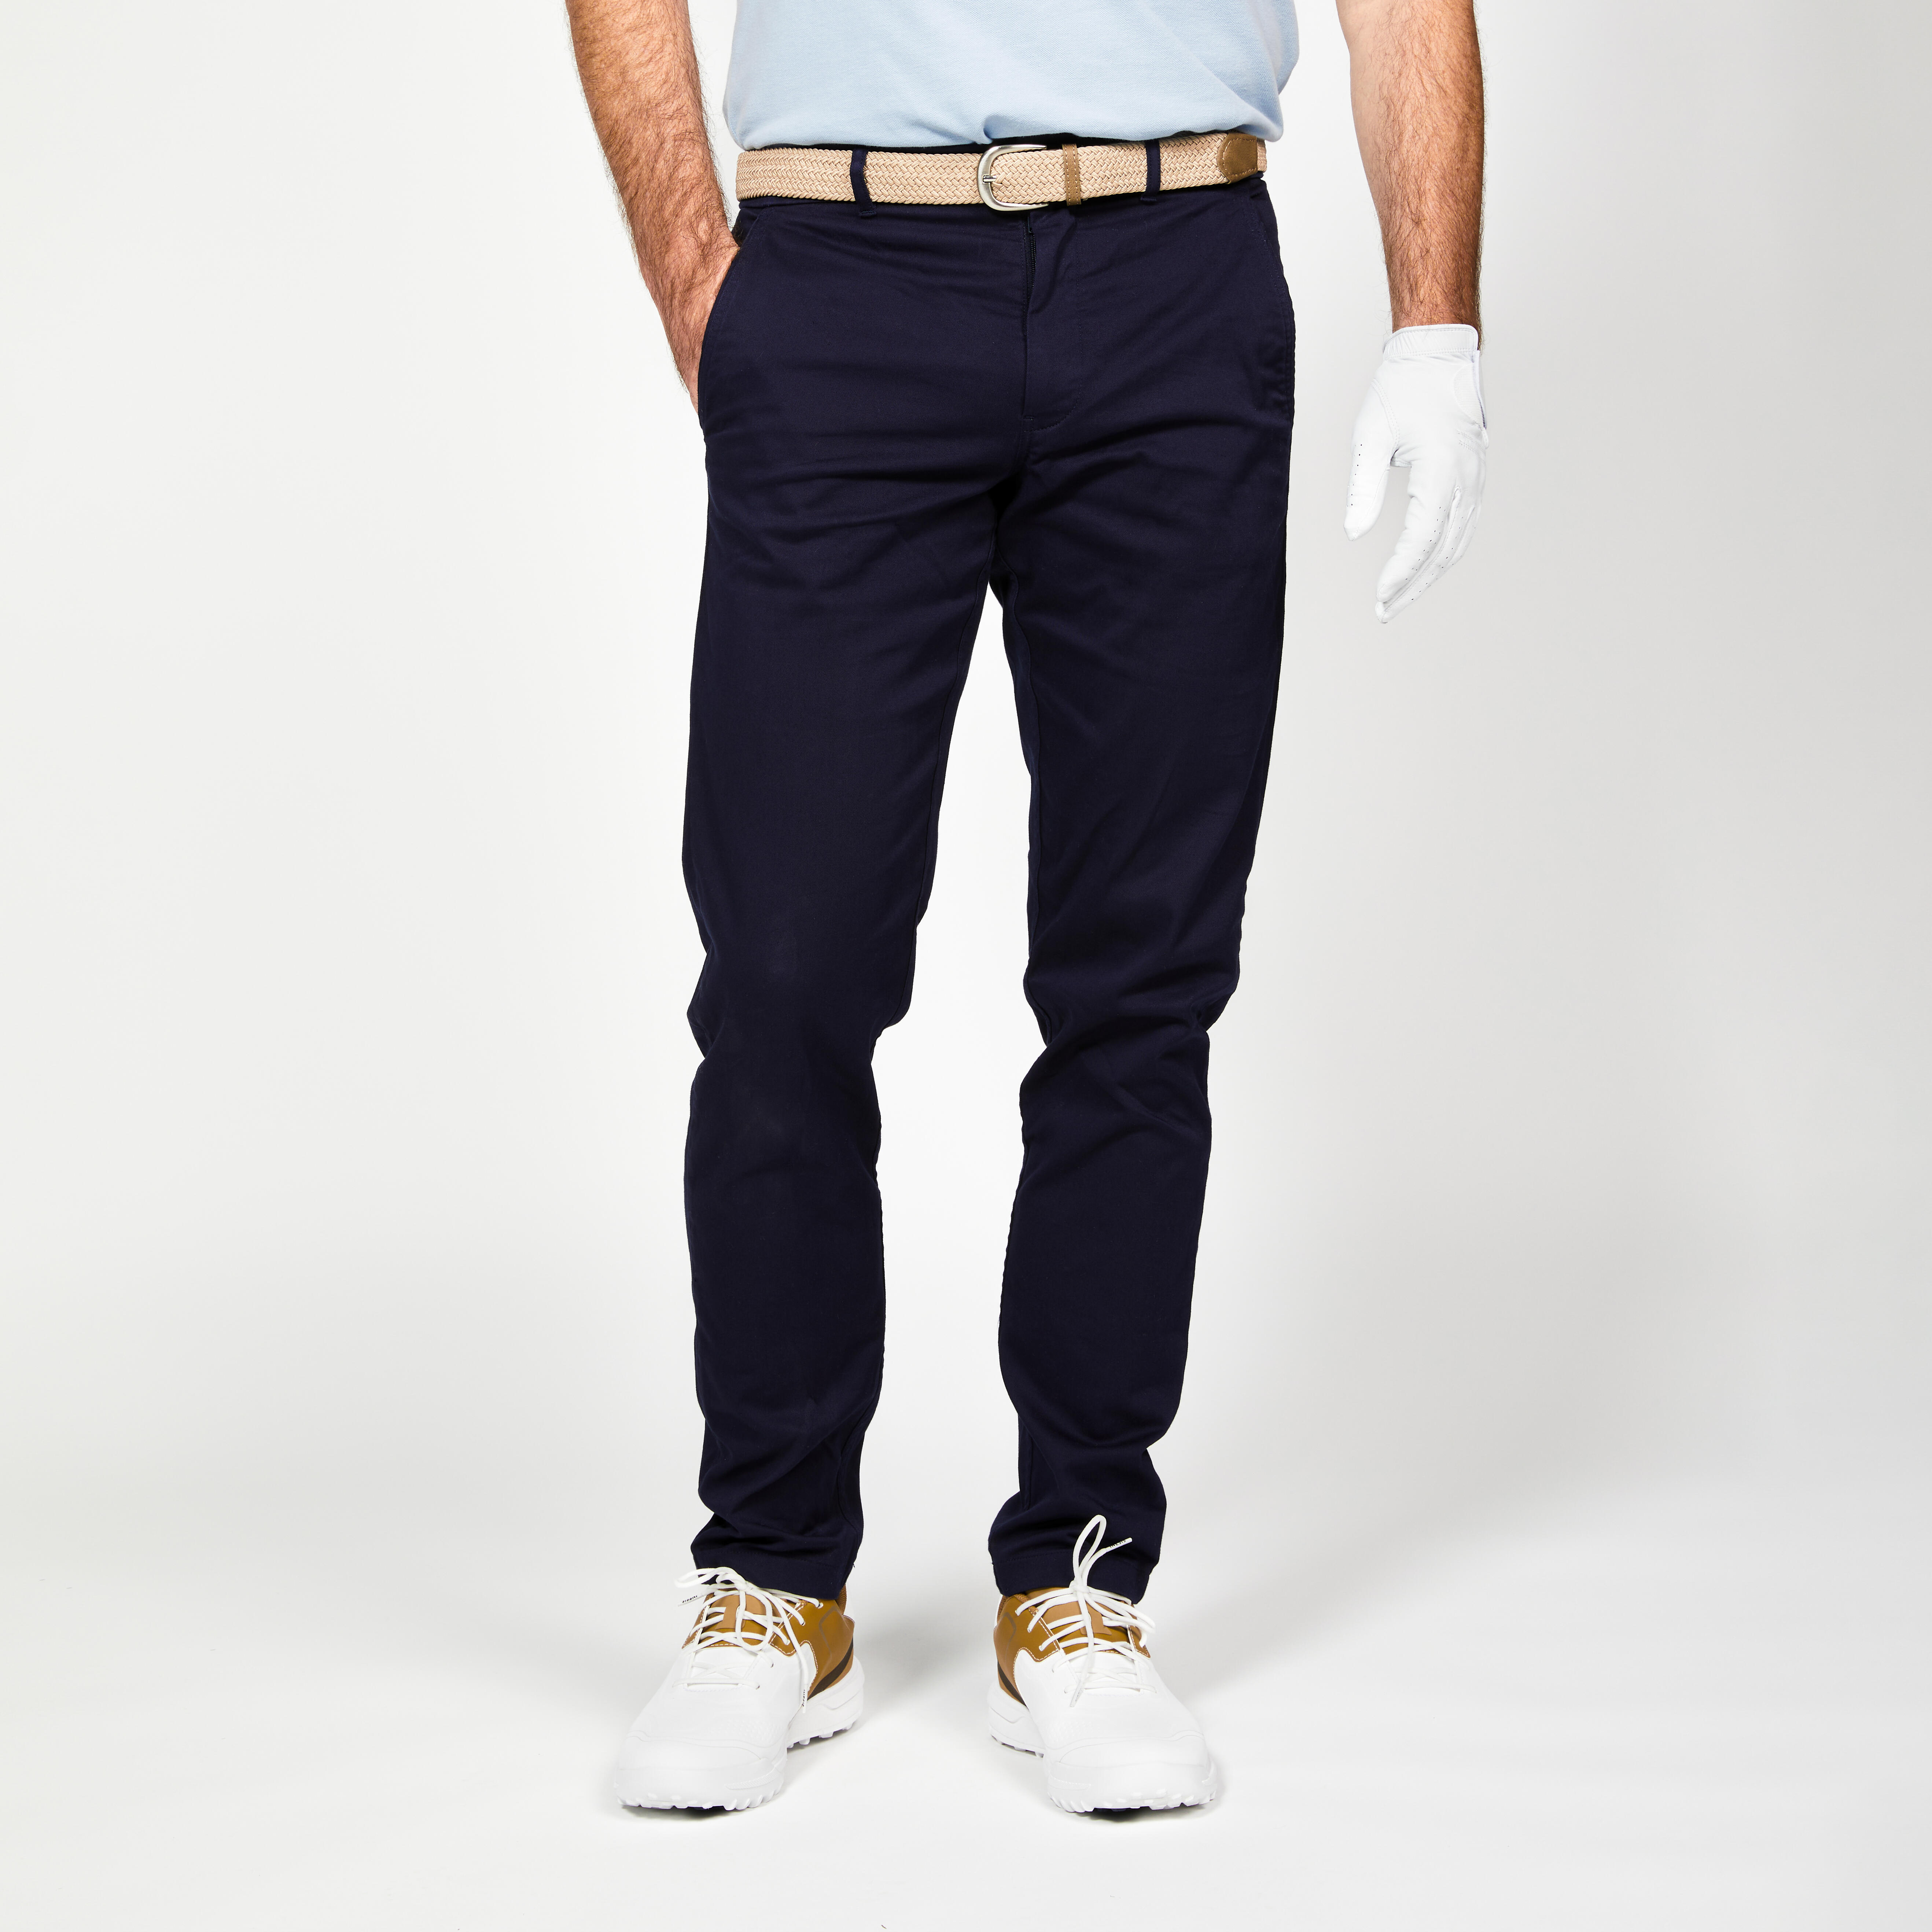 pantalon chino golf coton homme - mw500 bleu marine - inesis